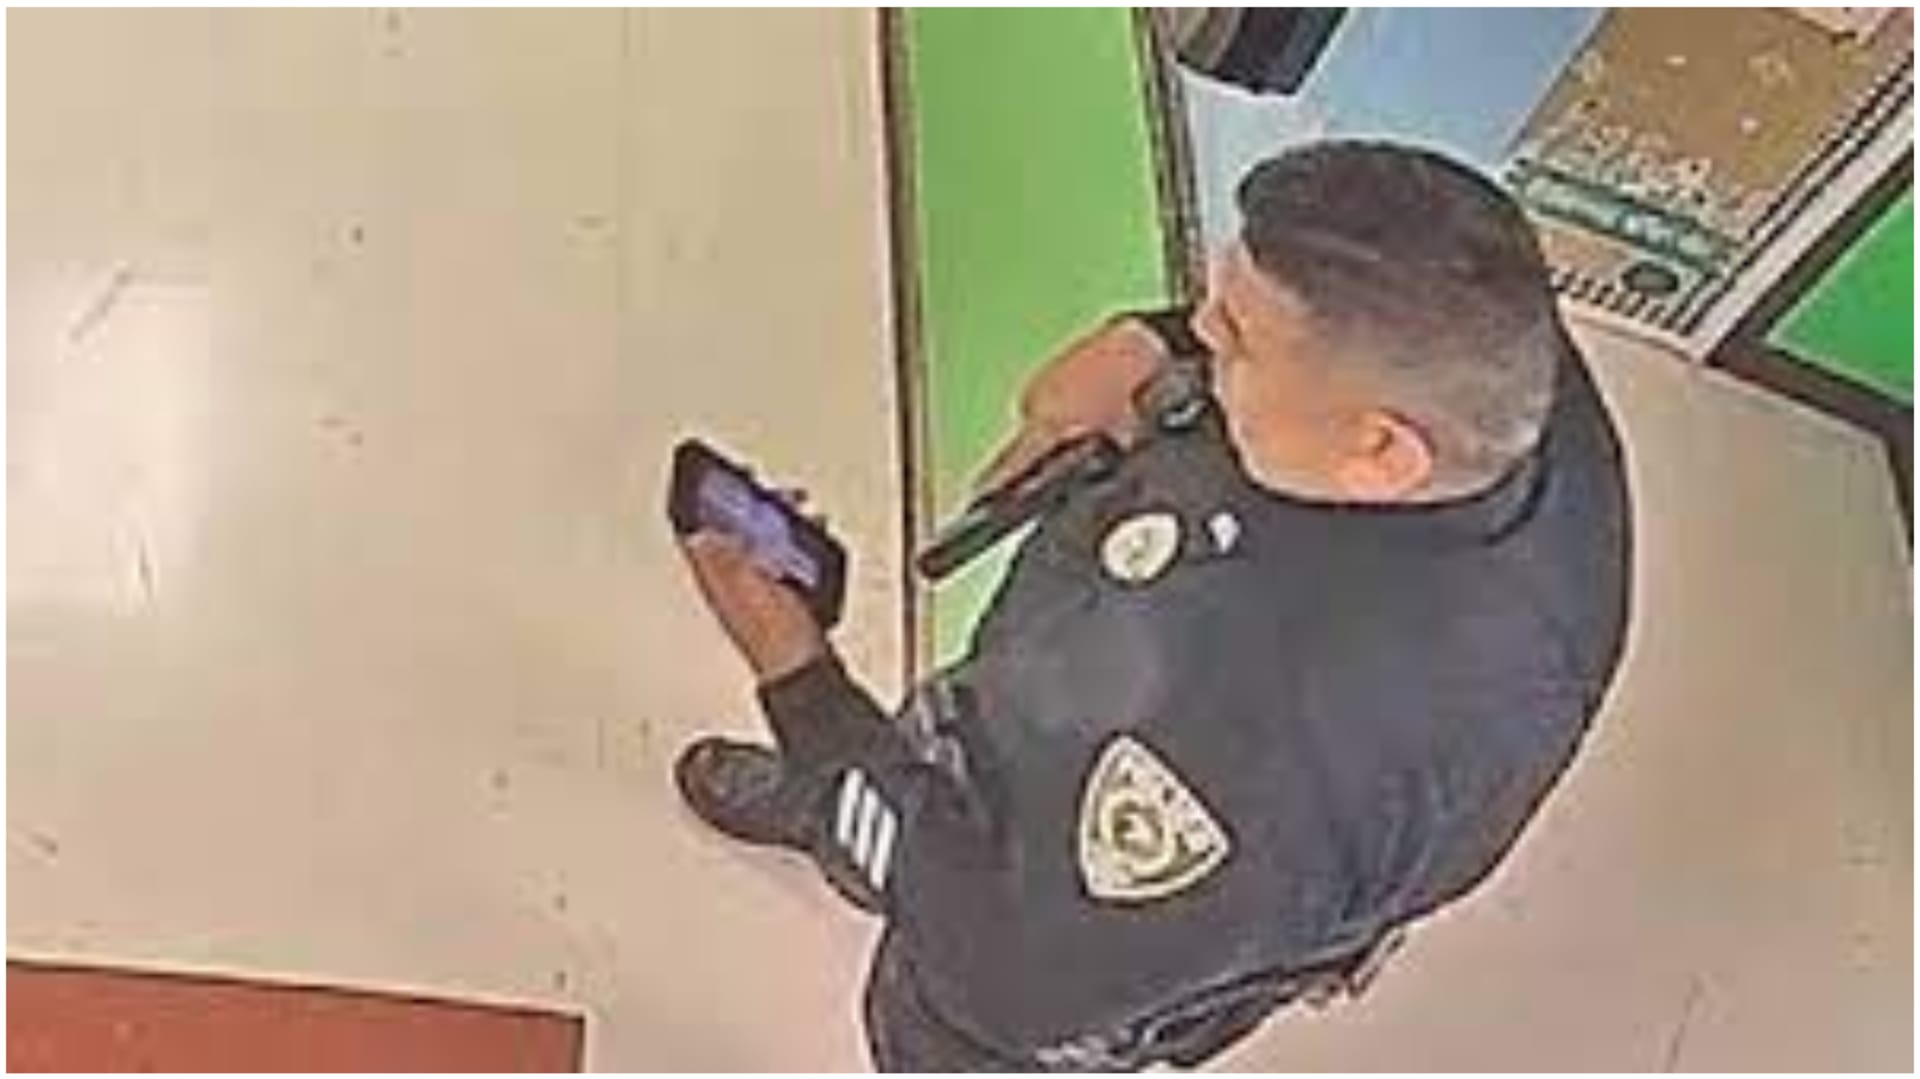 Proč policista držel v ruce telefon při zásahu ve škole? 1